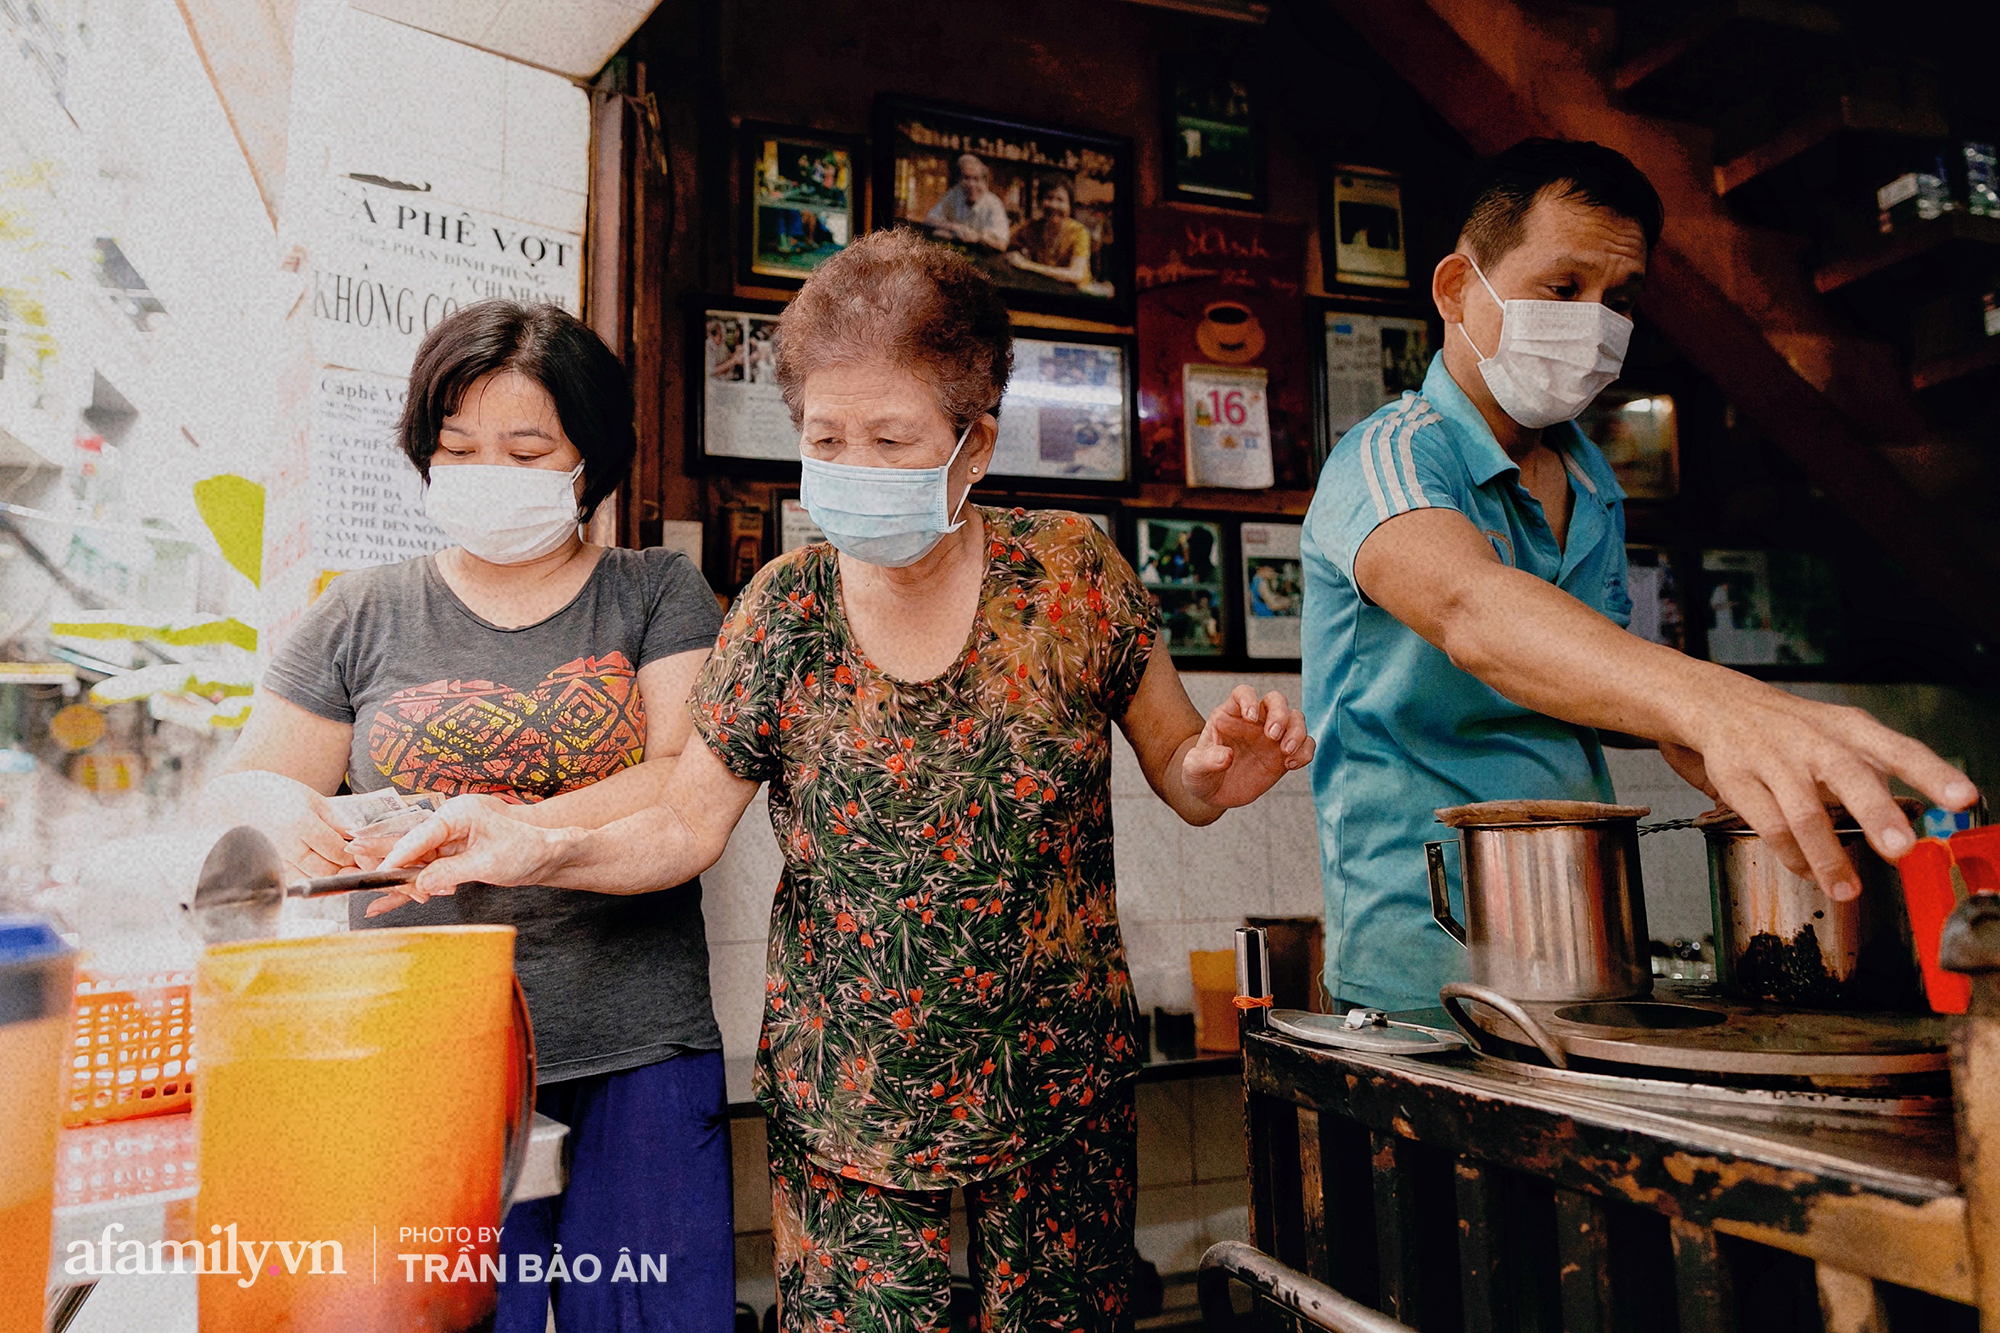 Quán cà phê Vợt nổi tiếng suốt 60 năm chưa từng nghỉ 1 ngày, ấy mà nhờ dịch mà nay mới được "thức giấc", khách Sài Gòn gặp lại mừng mừng, tủi tủi bên góc quen - Ảnh 8.